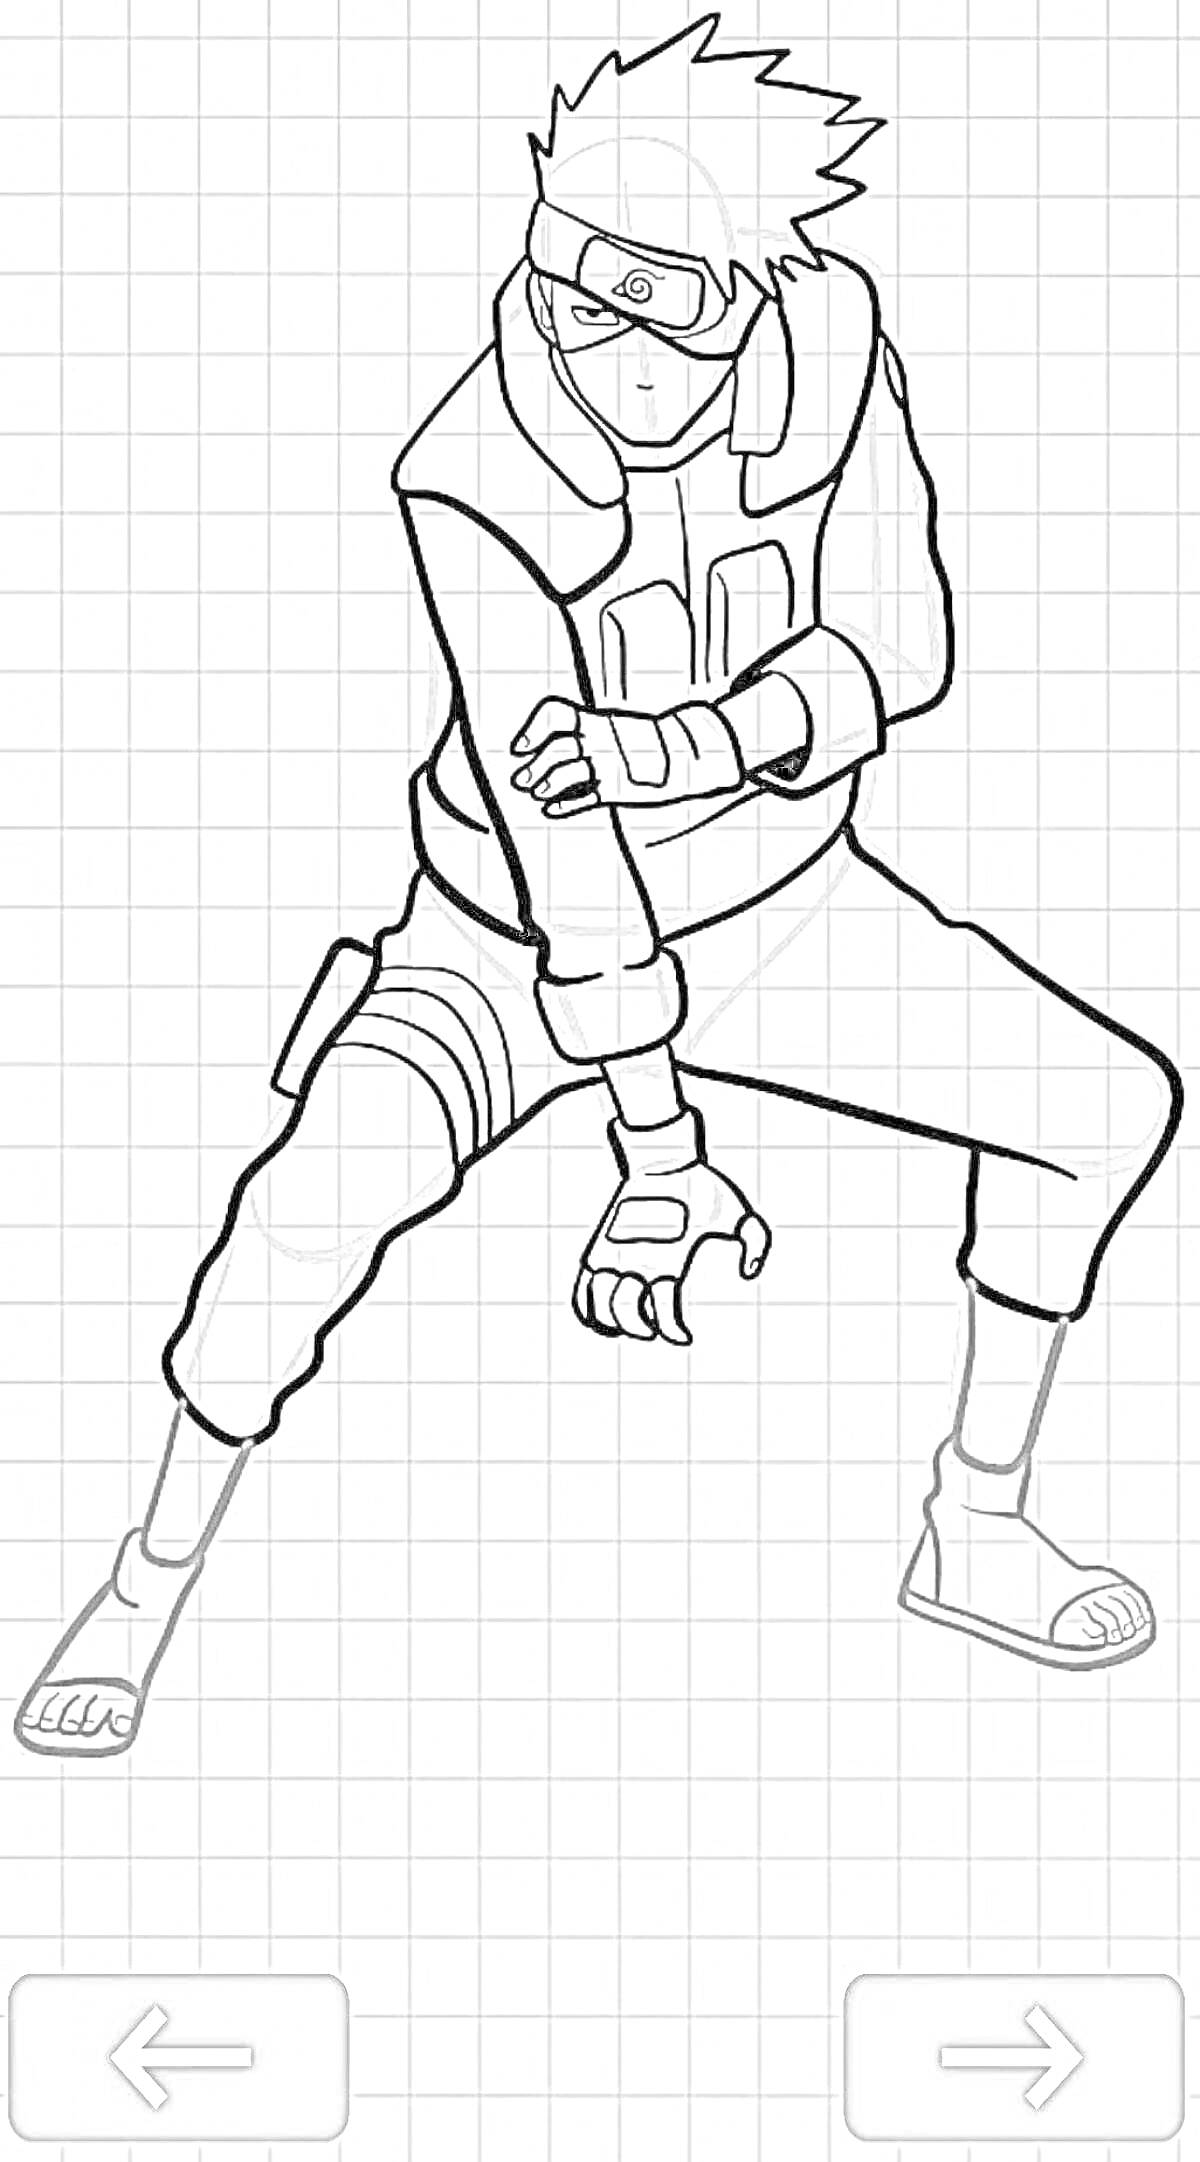 Раскраска Человек в маске и защитной одежде в боевой стойке